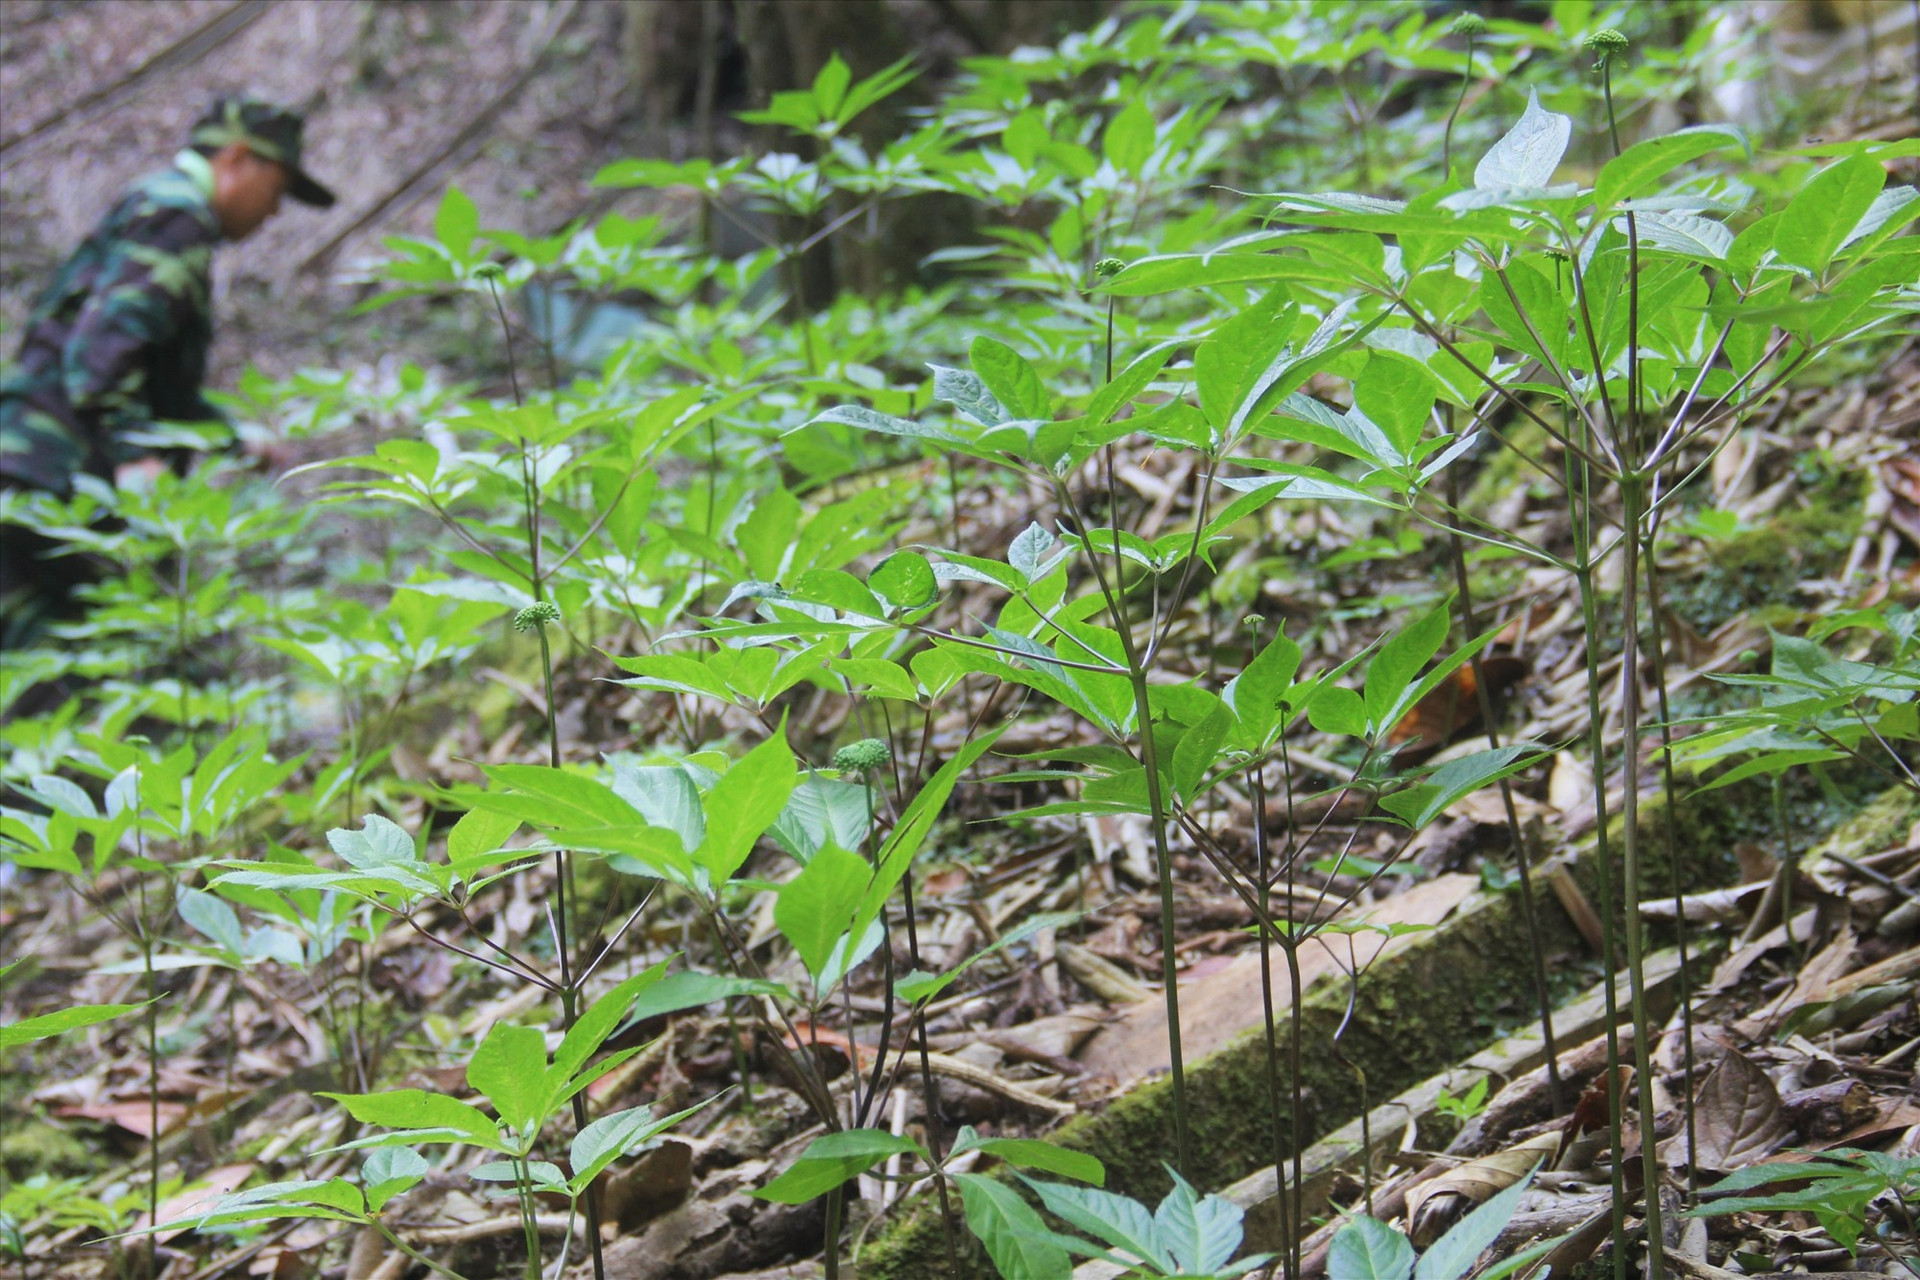 Thời gian qua, Quảng Nam chú trọng hỗ trợ người dân phát triển kinh tế rừng. Ảnh: ALĂNG NGƯỚC